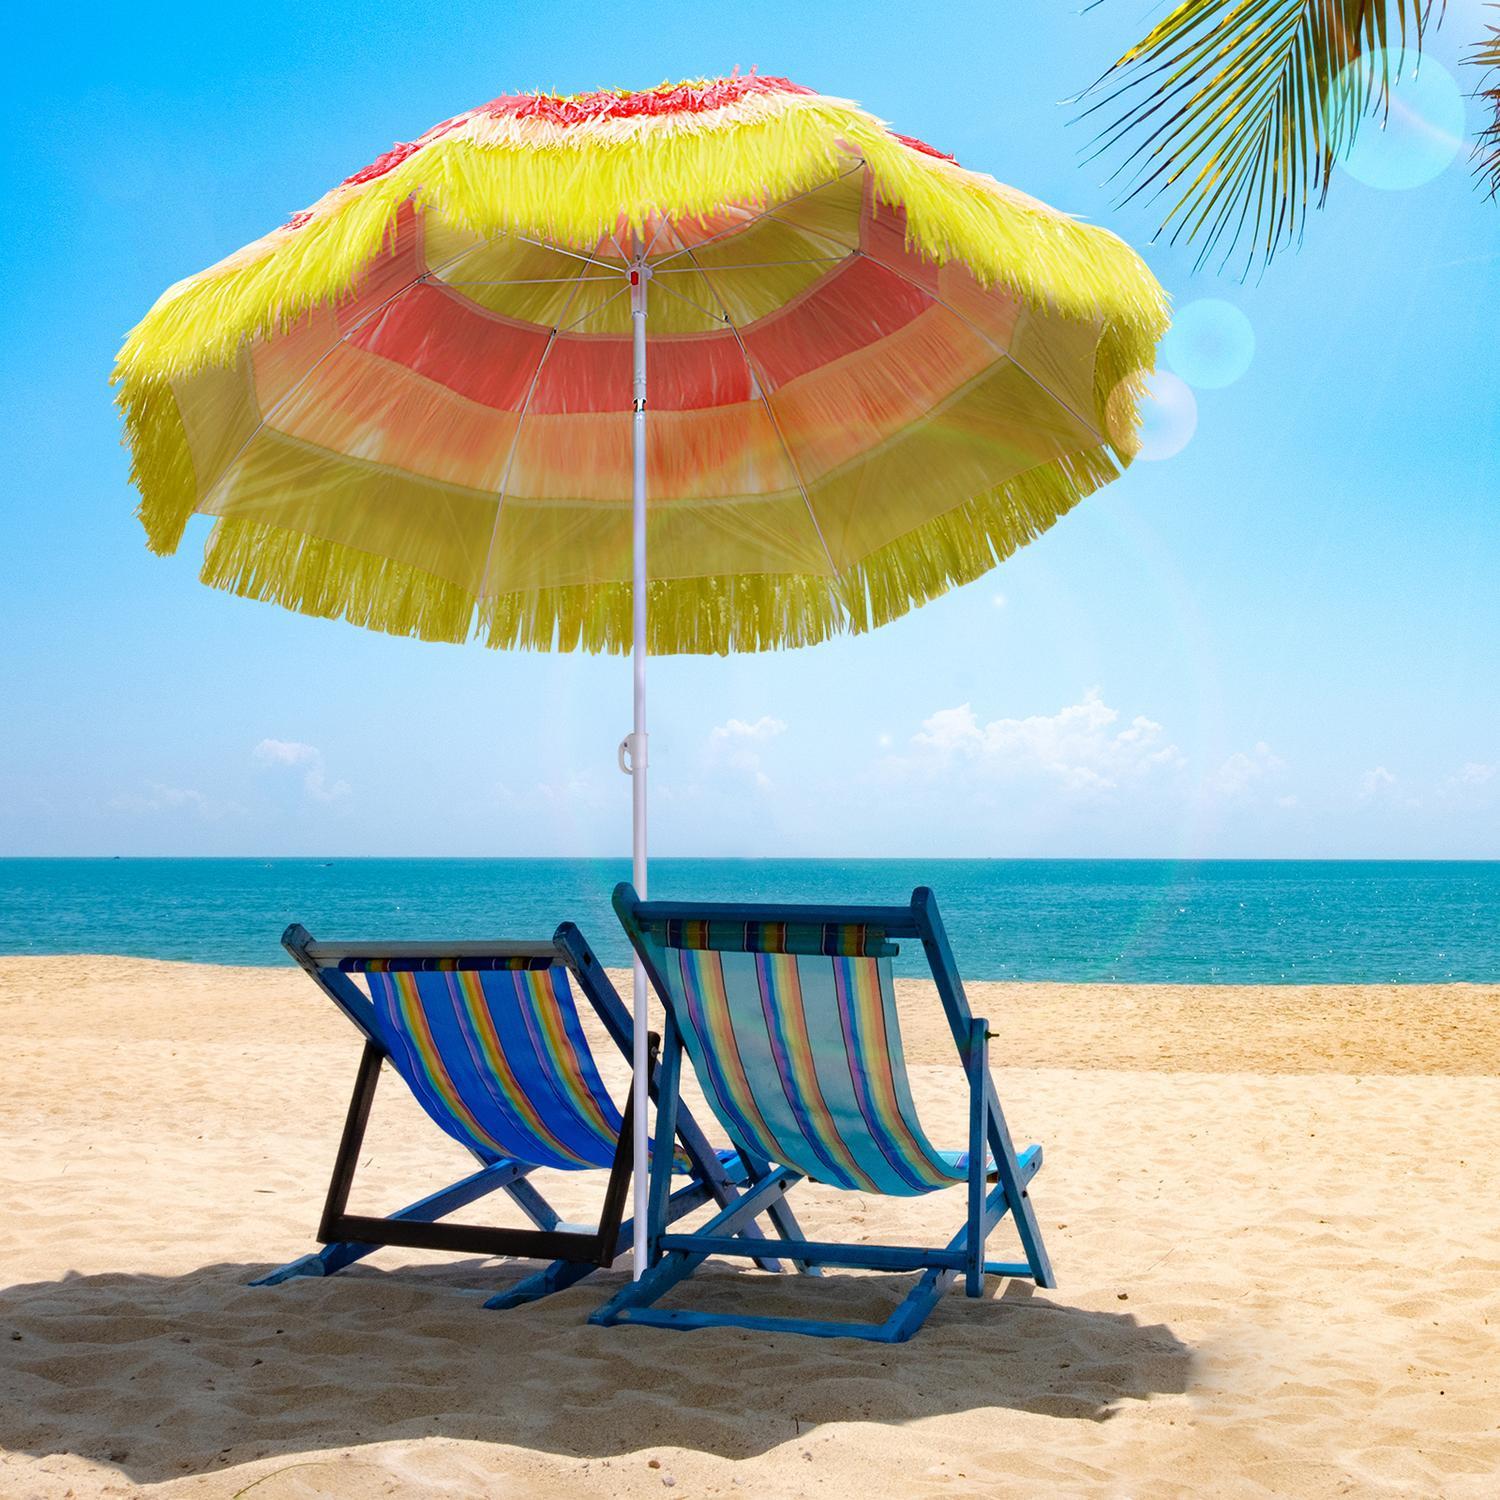 Outsunny Ombrellone Ombrellone Hawaiano Ombrellone Da Spiaggia Ombrellone Da Festa Ombrellone Da Giardino In Vari Colori 4 Modelli (Ombrello Hawaiano/Ø160Cm/Colorato)  